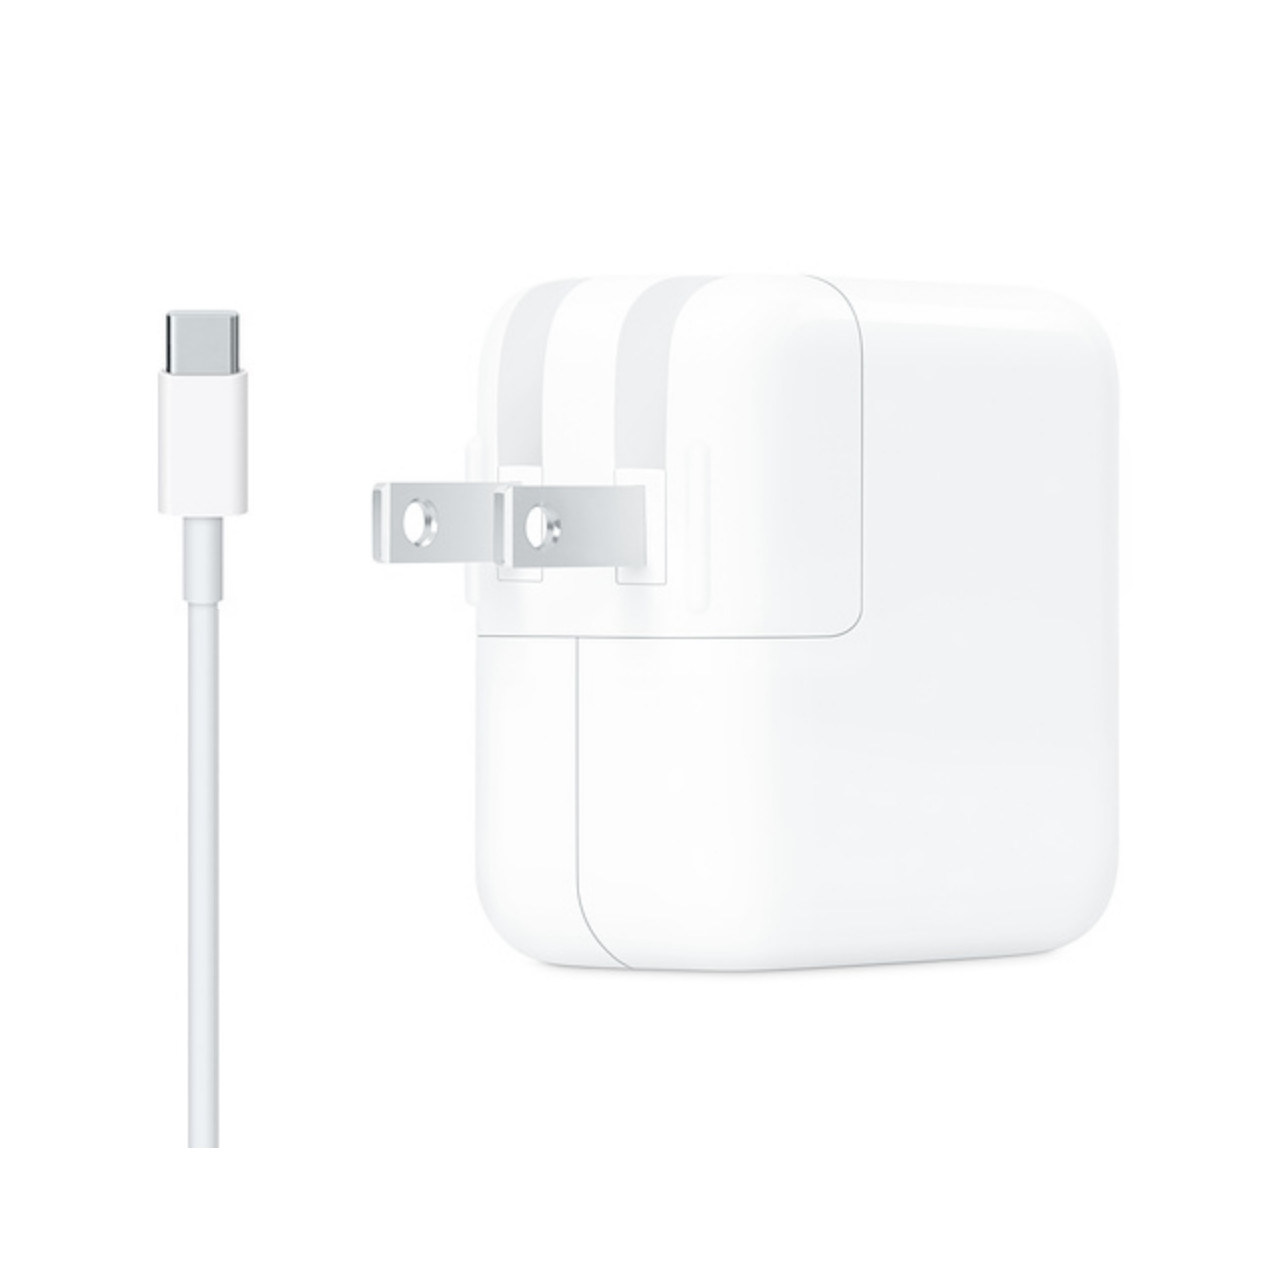 Adapter 29W USB-C Sạc Cho MacBook Retina 12"; Sạc Nhanh iPhone, iPad